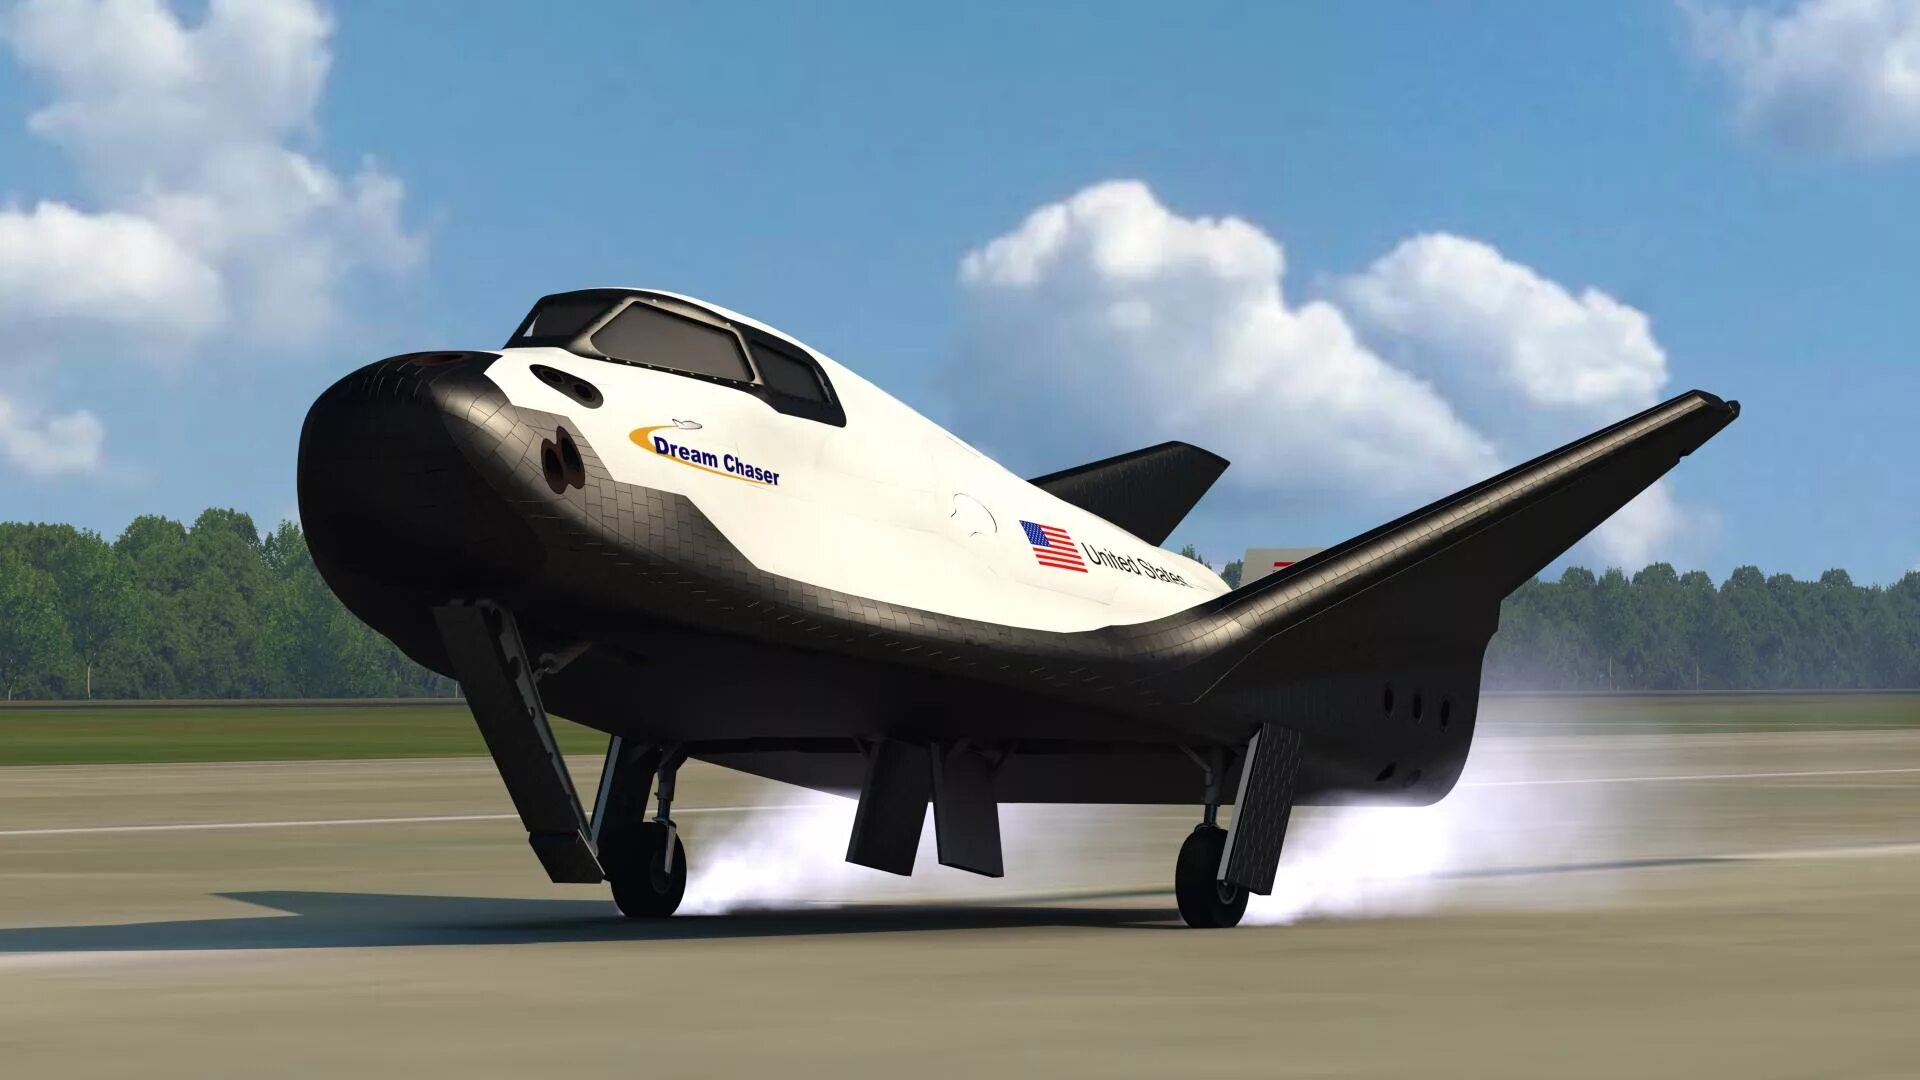 Космический корабль Дрим Чейзер. Космический челнок Dream Chaser. Космический самолет Dream Chaser. Dream Chaser Бор-4. Х 37 б